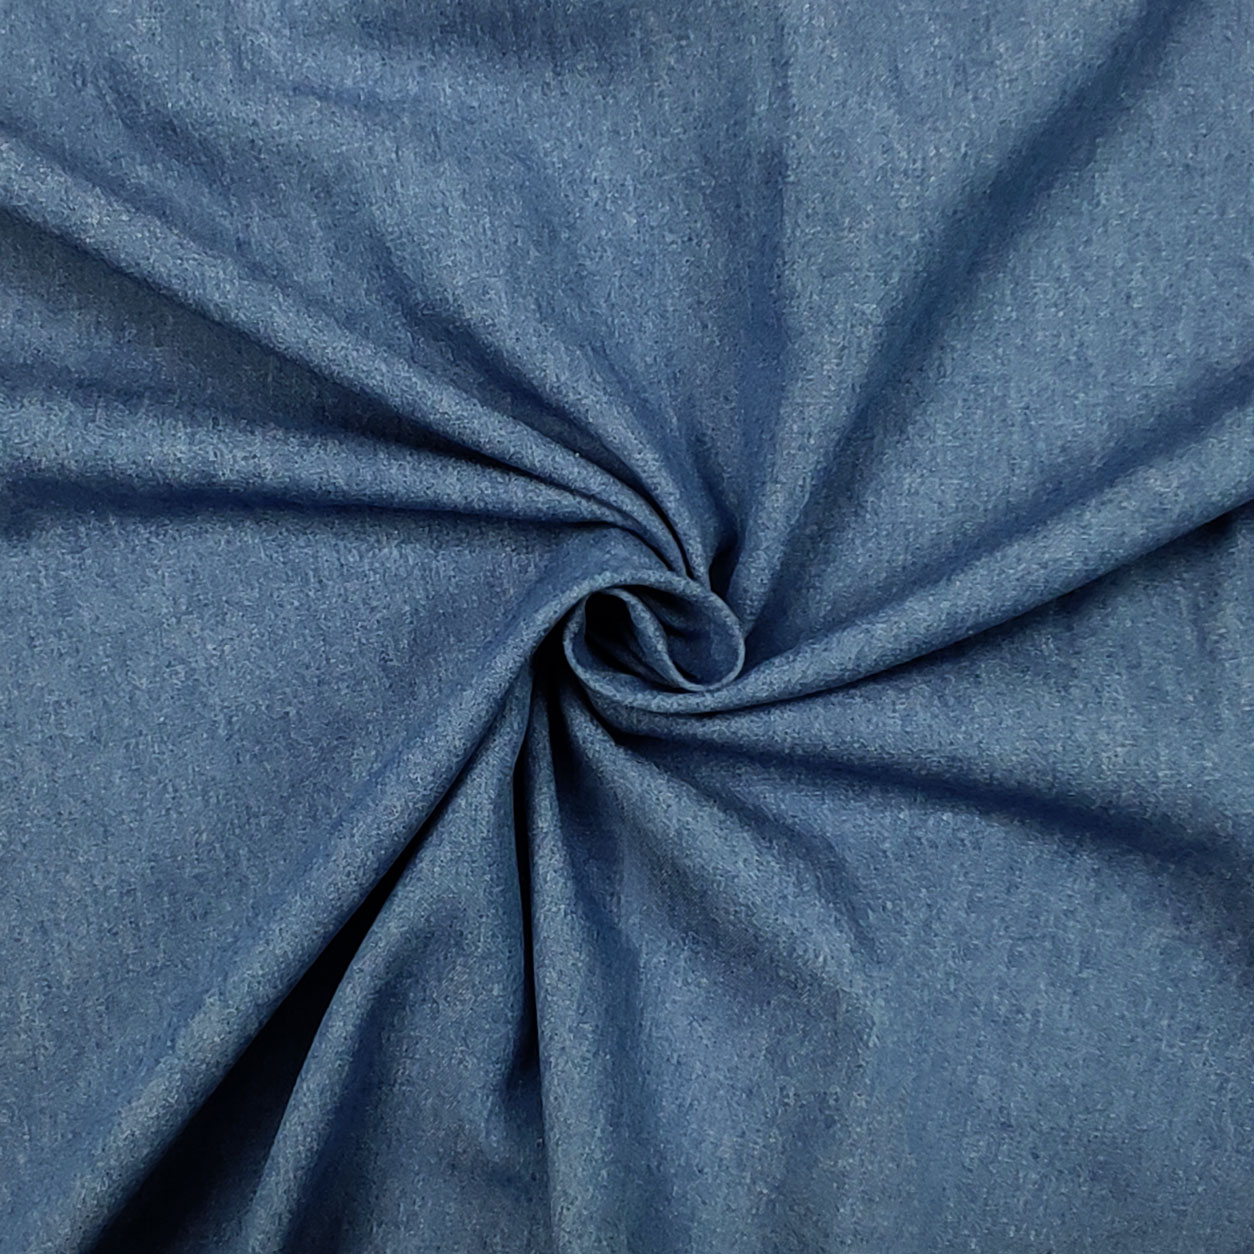 Tessuto in denim e blu chiaro